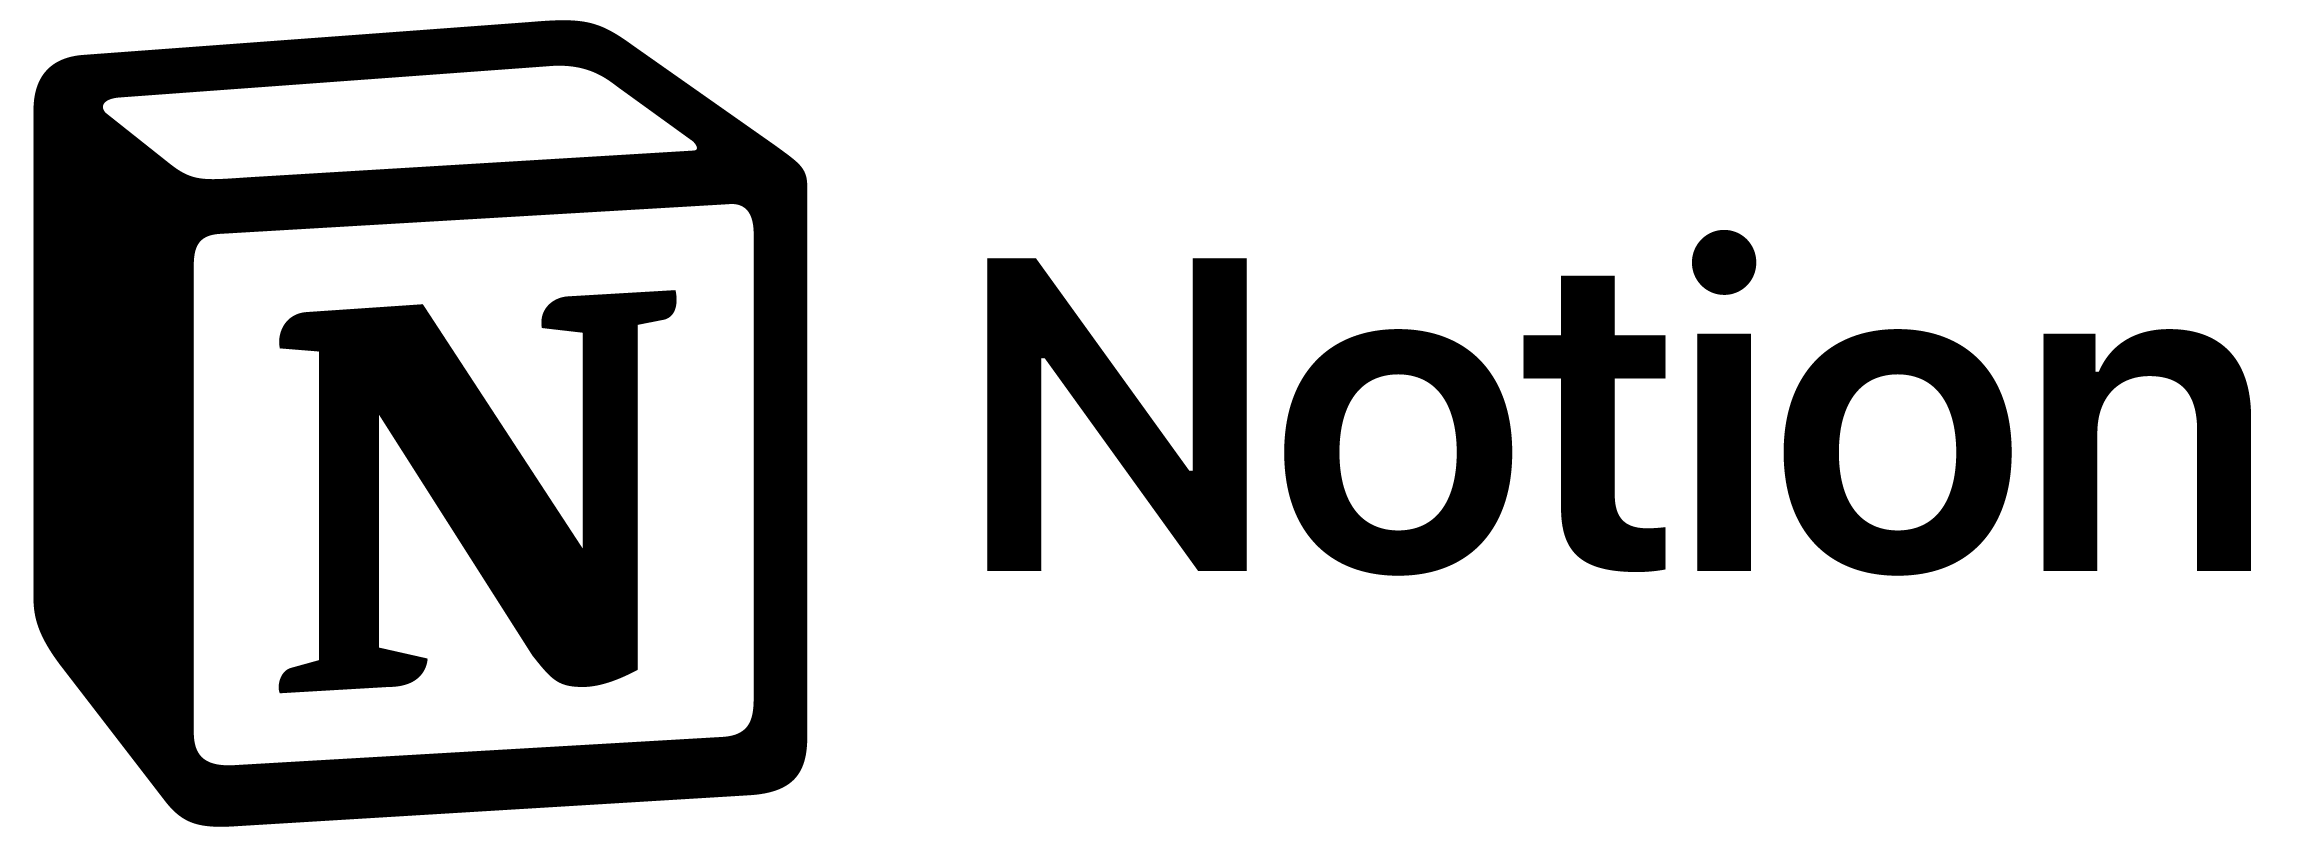 notion logo black